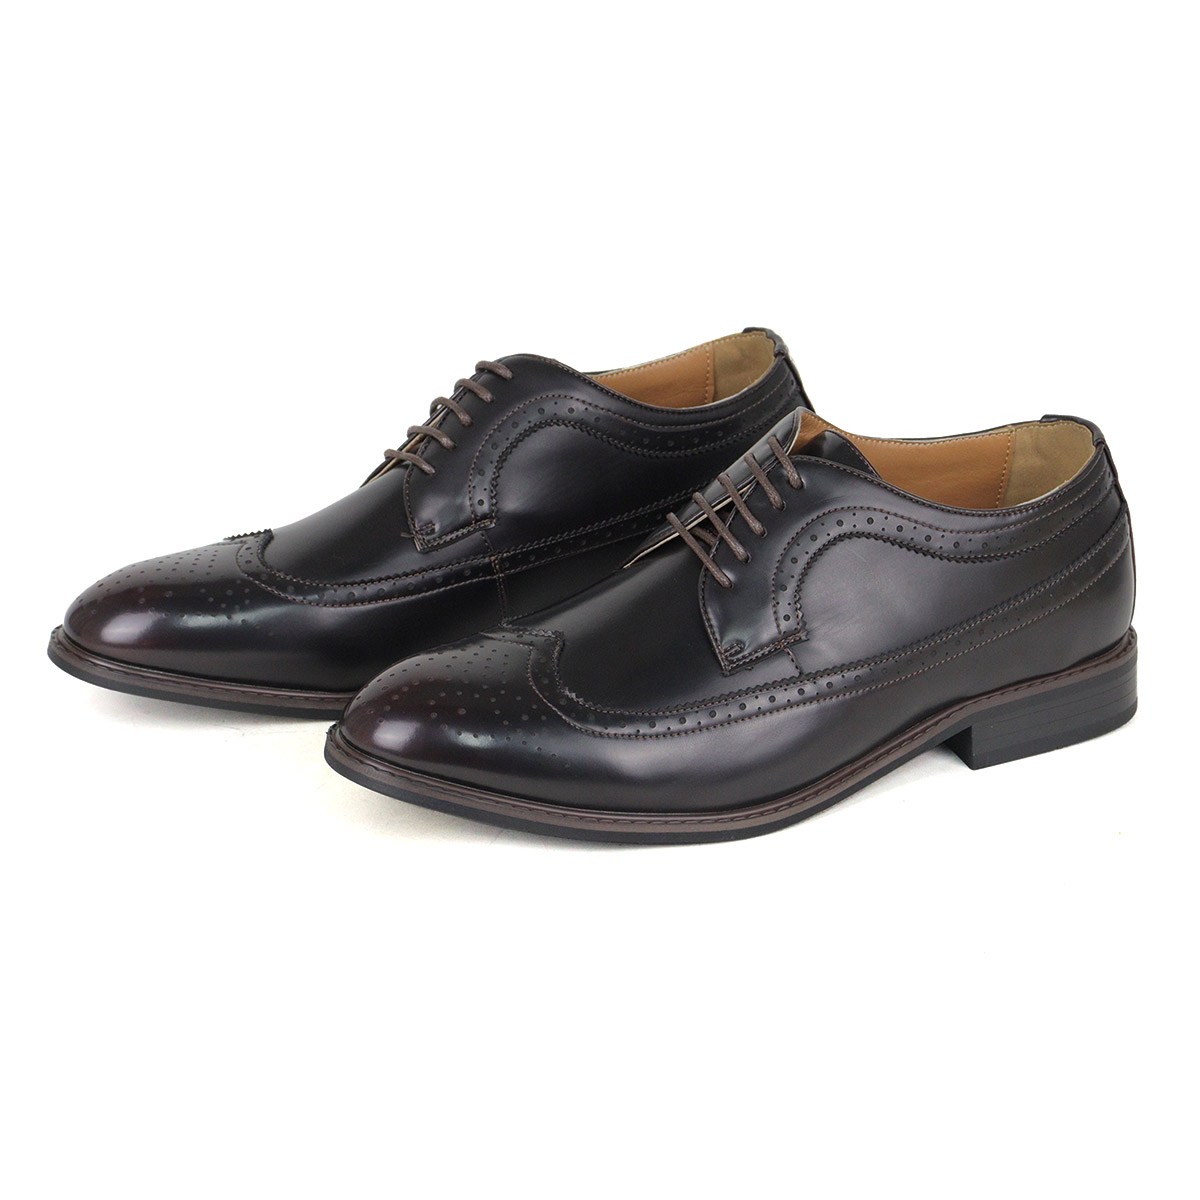 オックスフォードシューズ メンズ 革靴 黒 ウイングチップ 3E 24.5-30cm No.802 ...